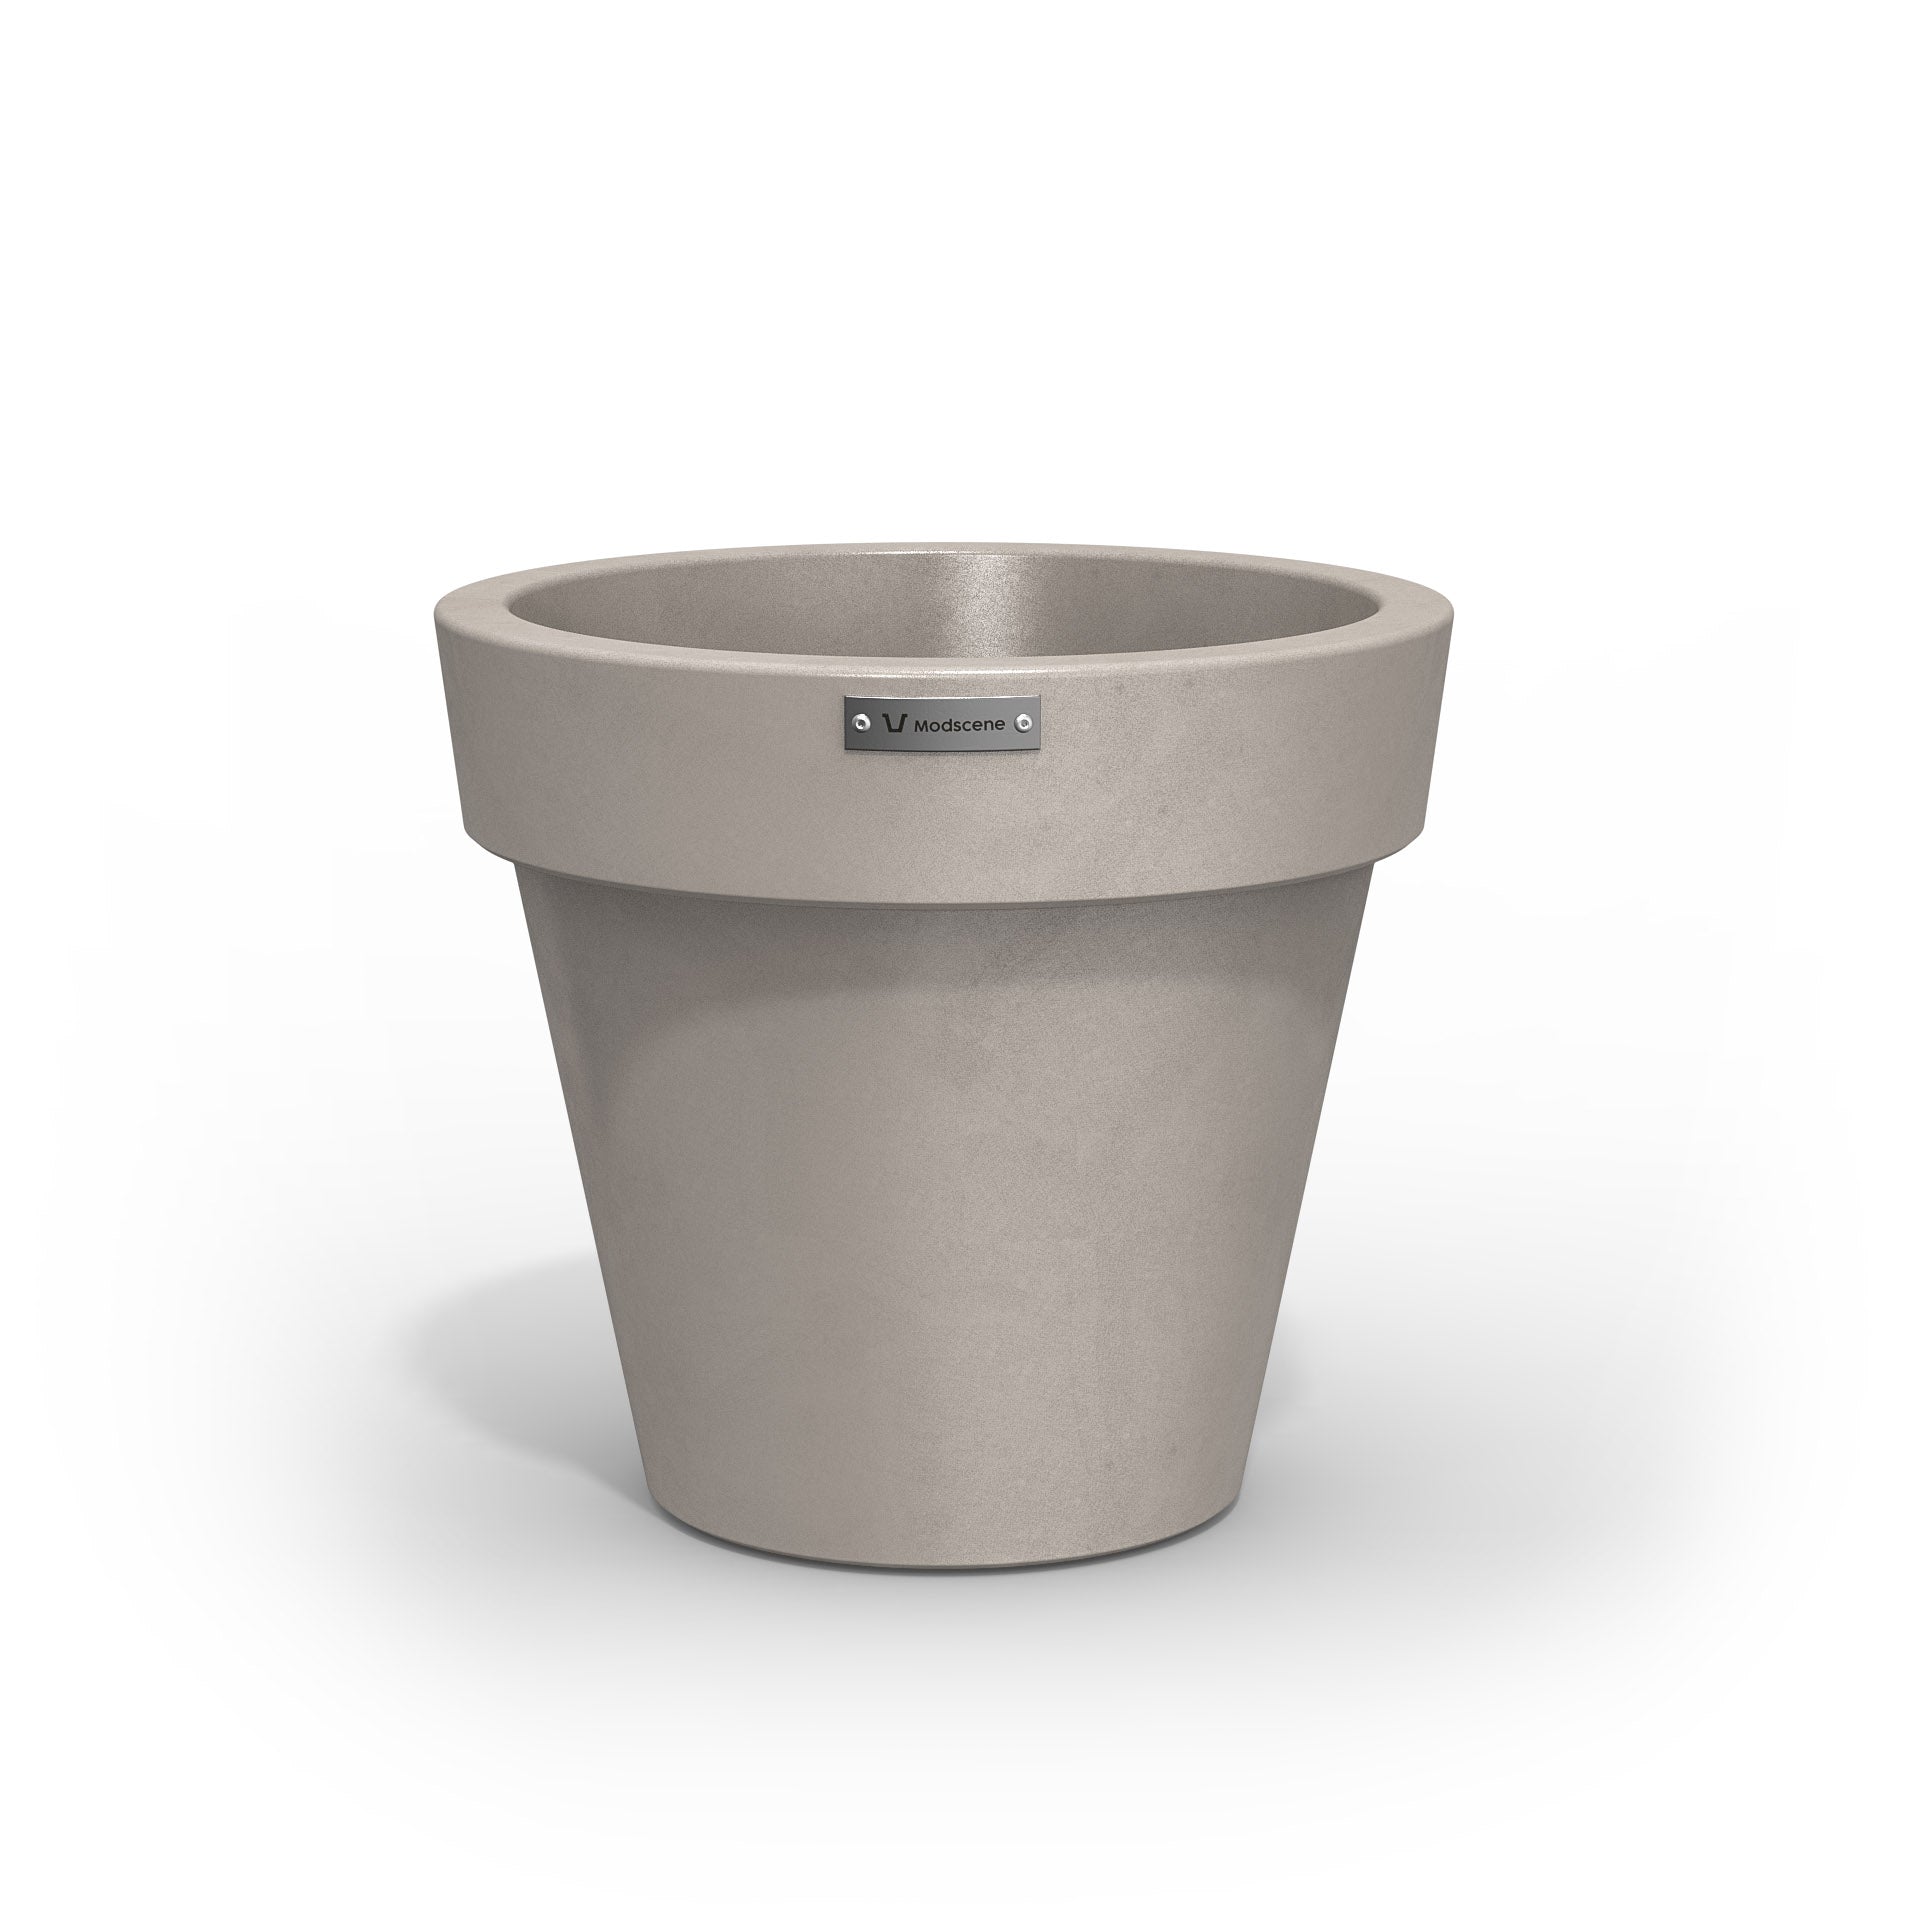 Small Modscene plastic planter pot in a sandstone colour with a concrete look.